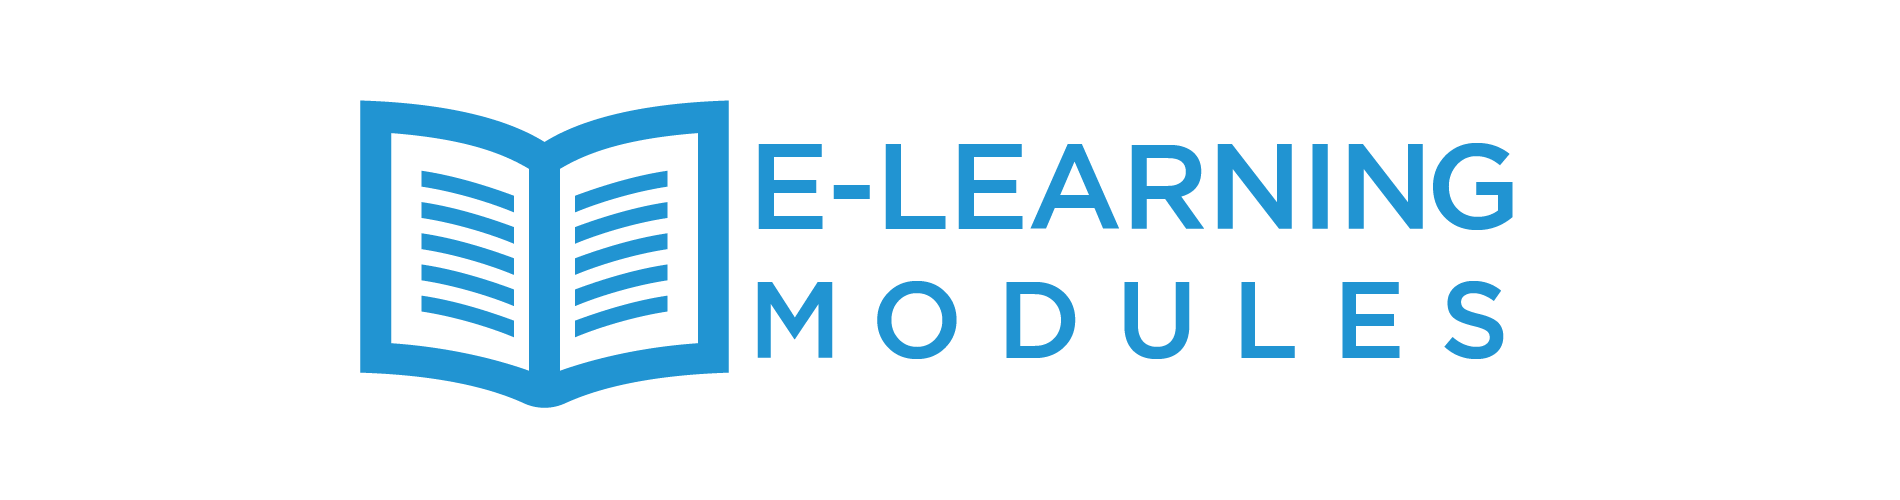 E-Learning Modules